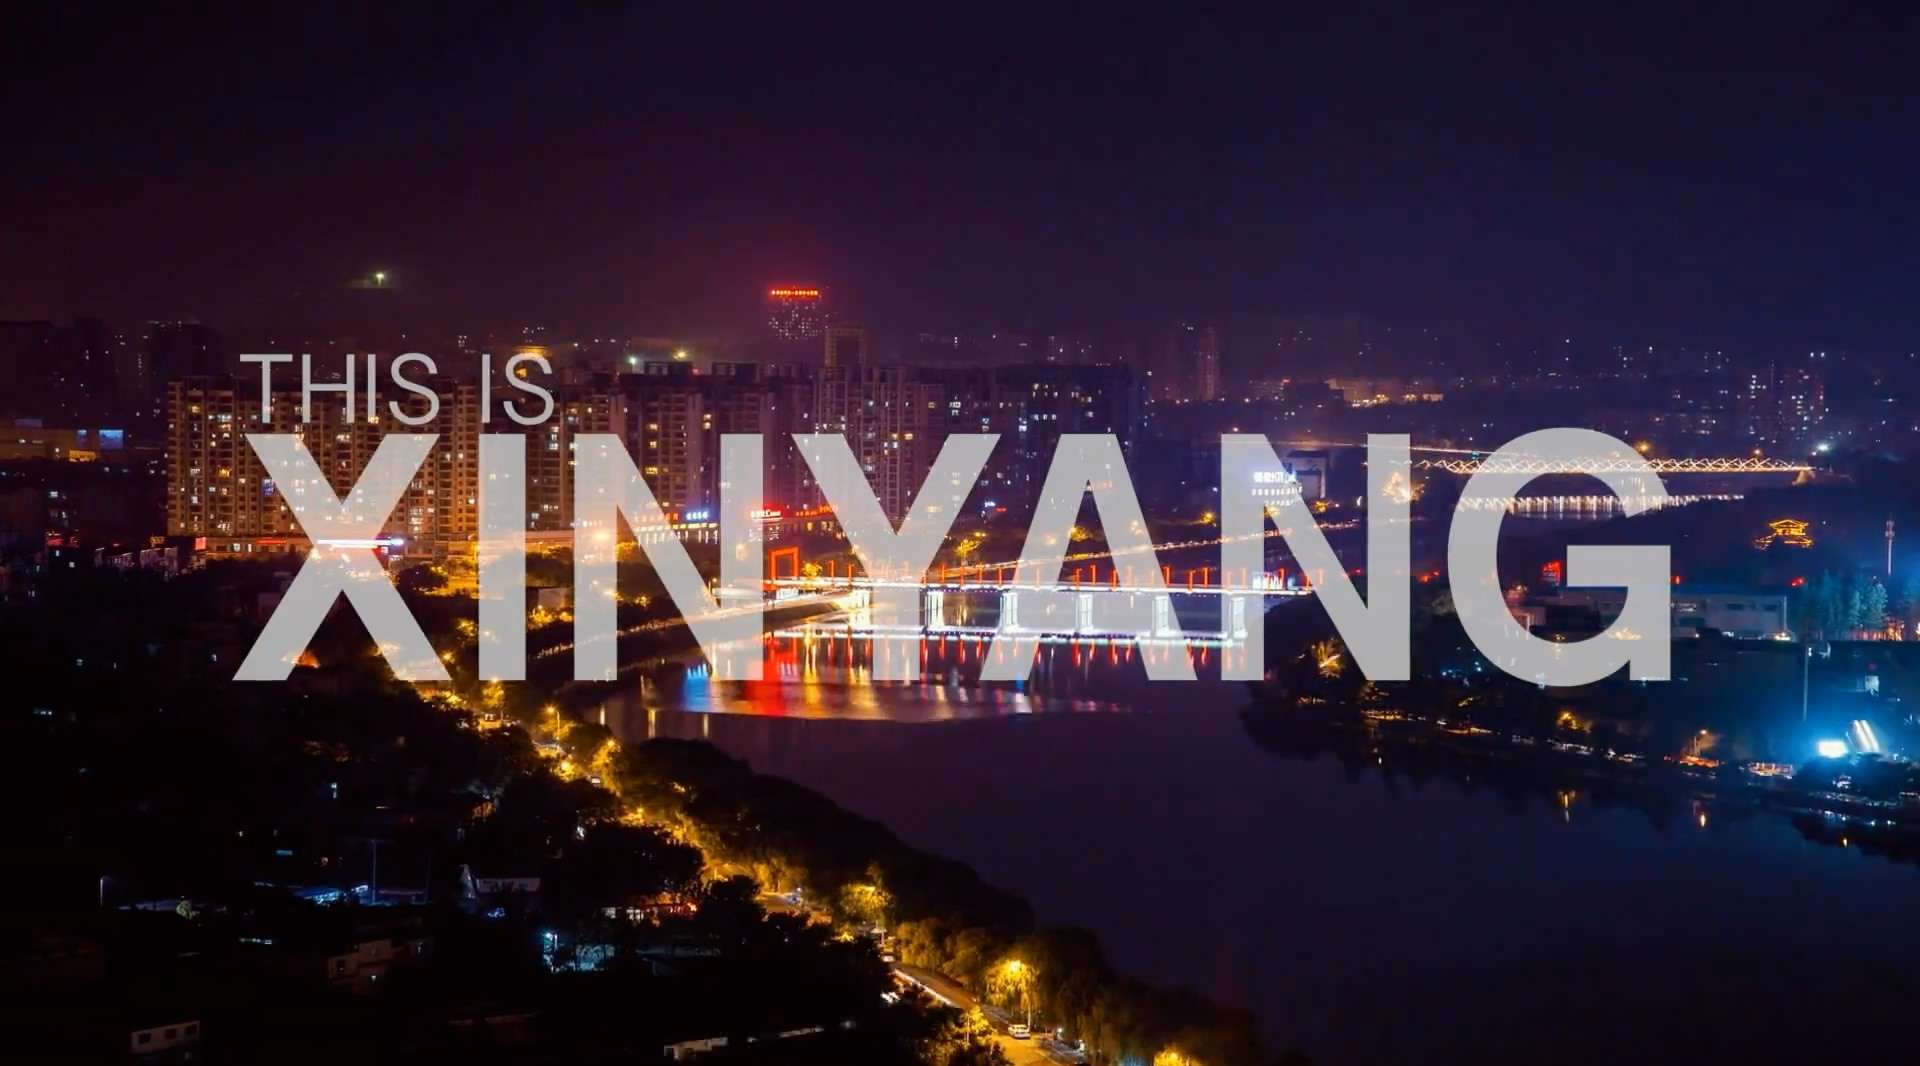 《THIS IS XINYANG》信阳史上最炫酷城市宣传片